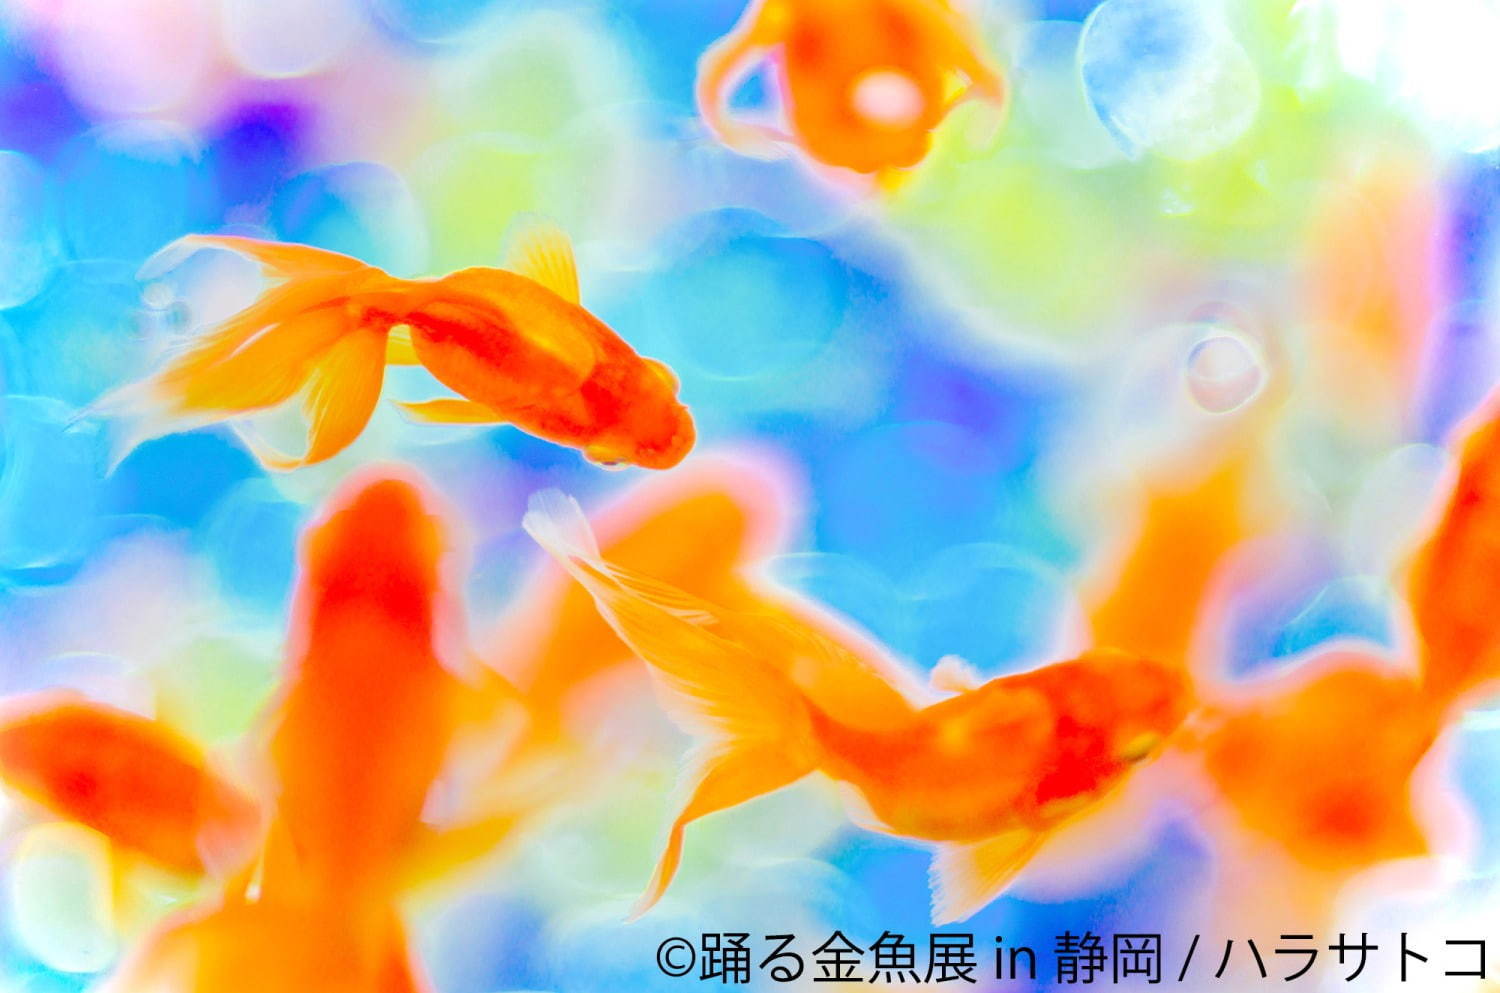 金魚の写真 イラスト展 踊る金魚展 静岡パルコで 人気作家の作品集結 新作限定グッズ販売も ファッションプレス